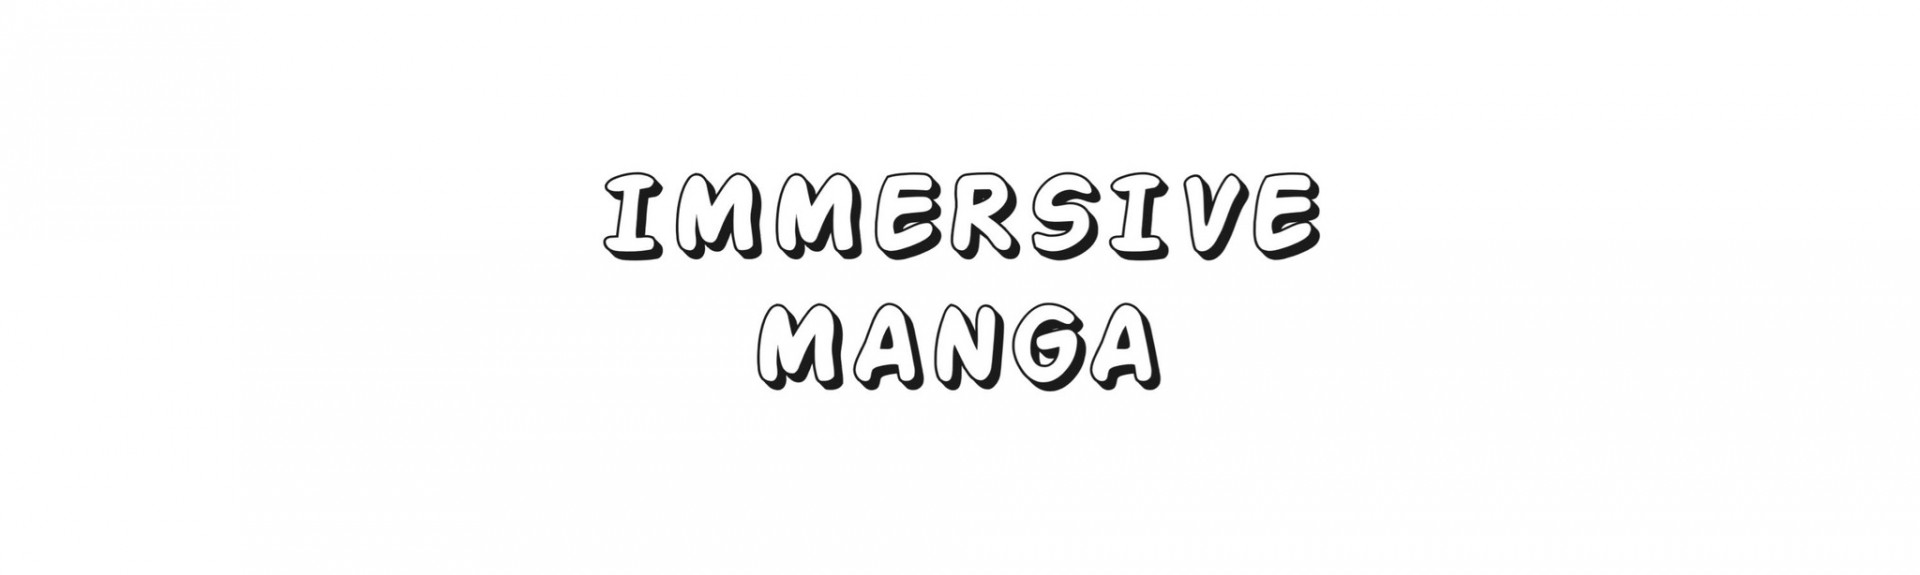 Immersive Manga